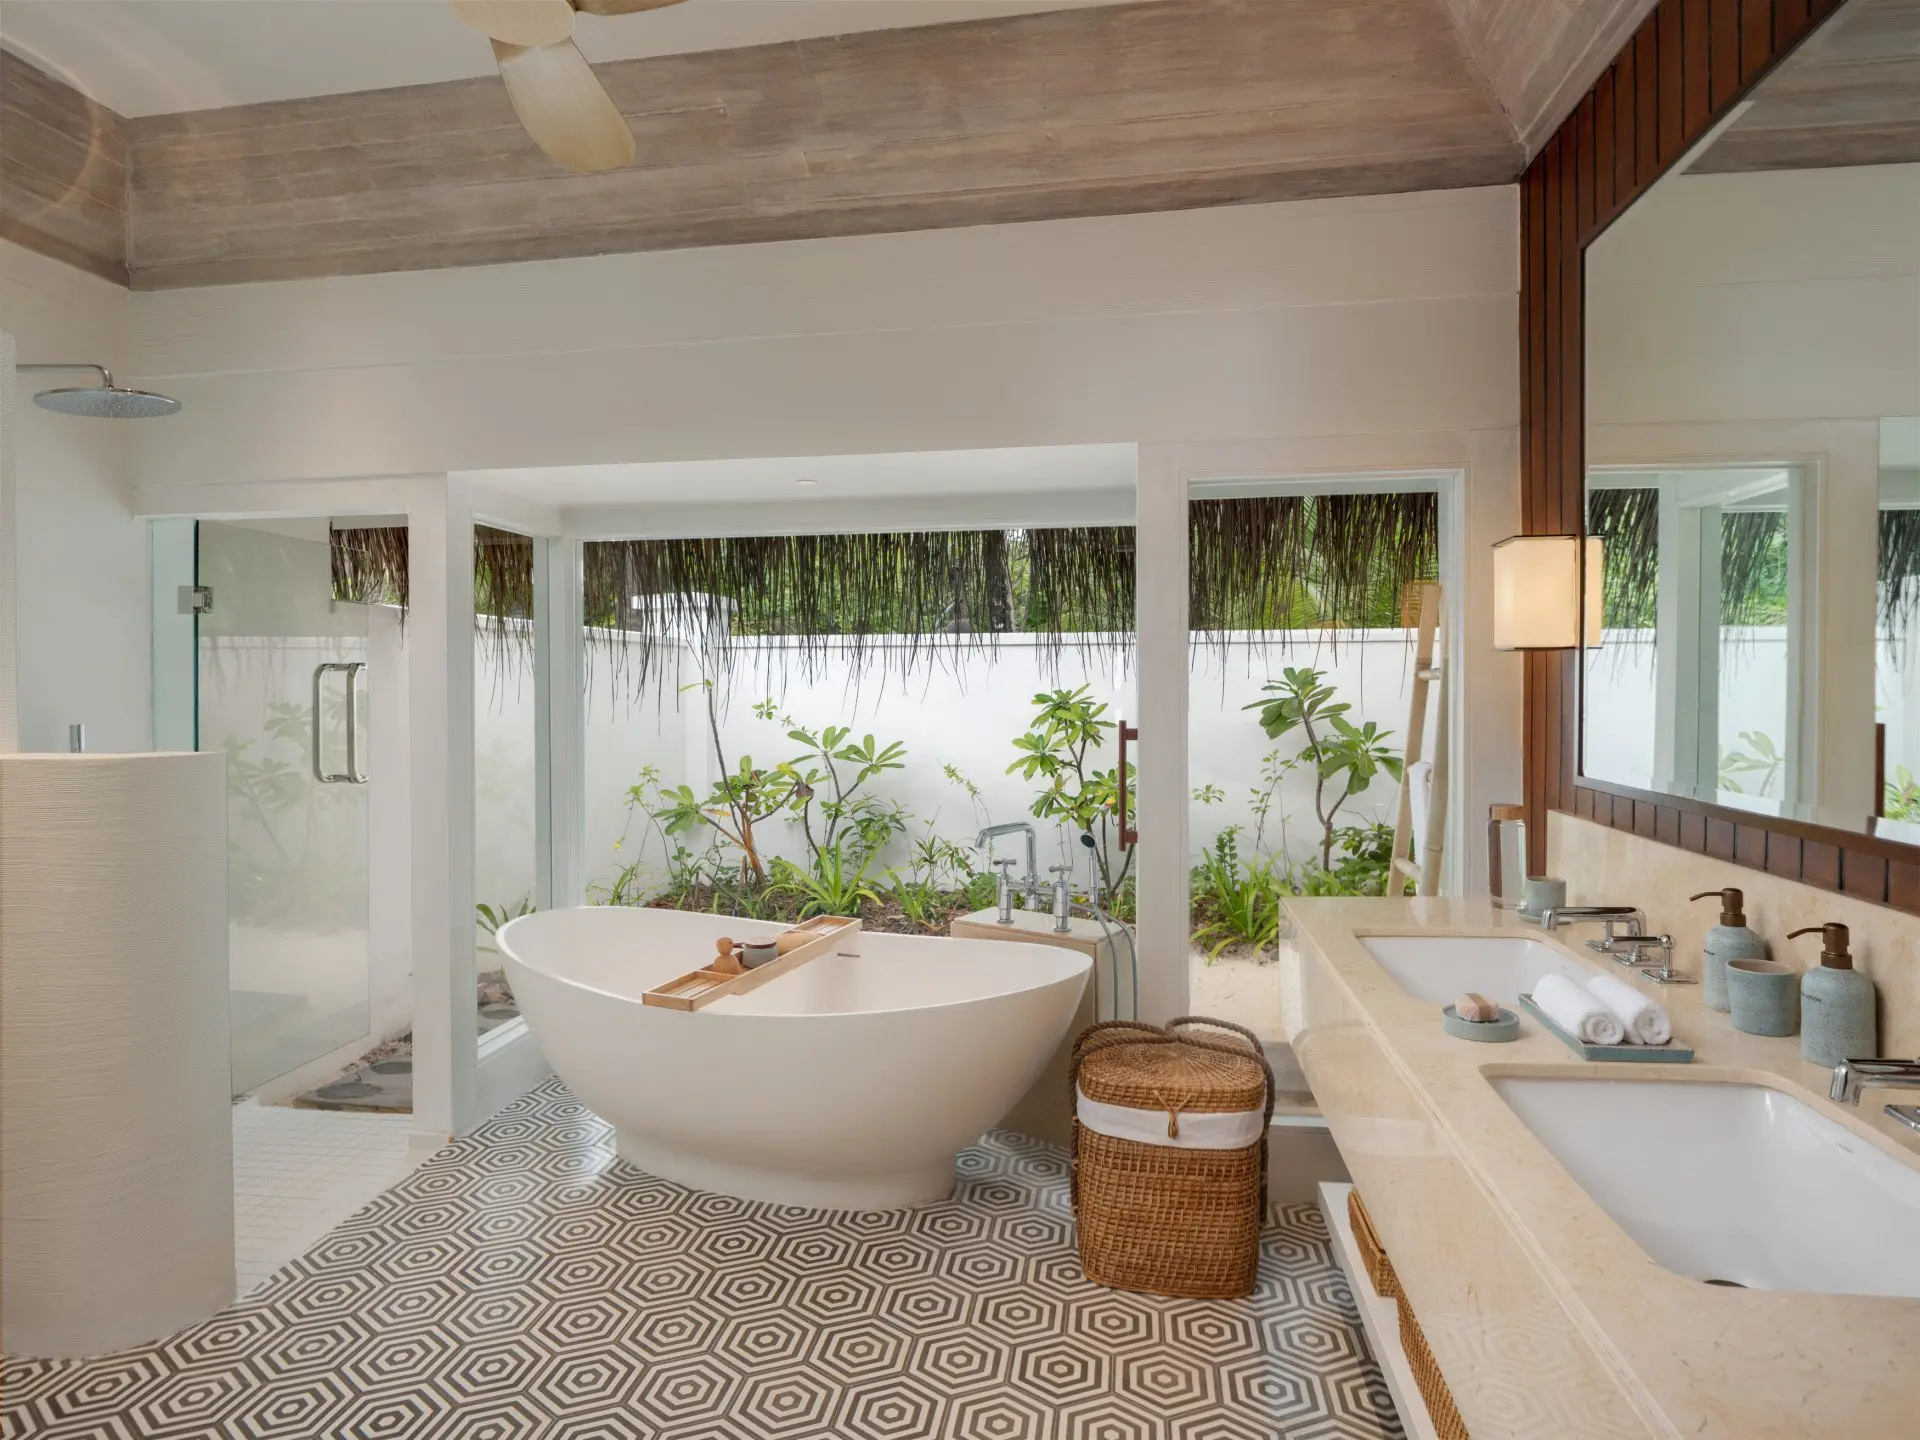 Deluxe beach villa suite with pool- bathroom interior.jpg